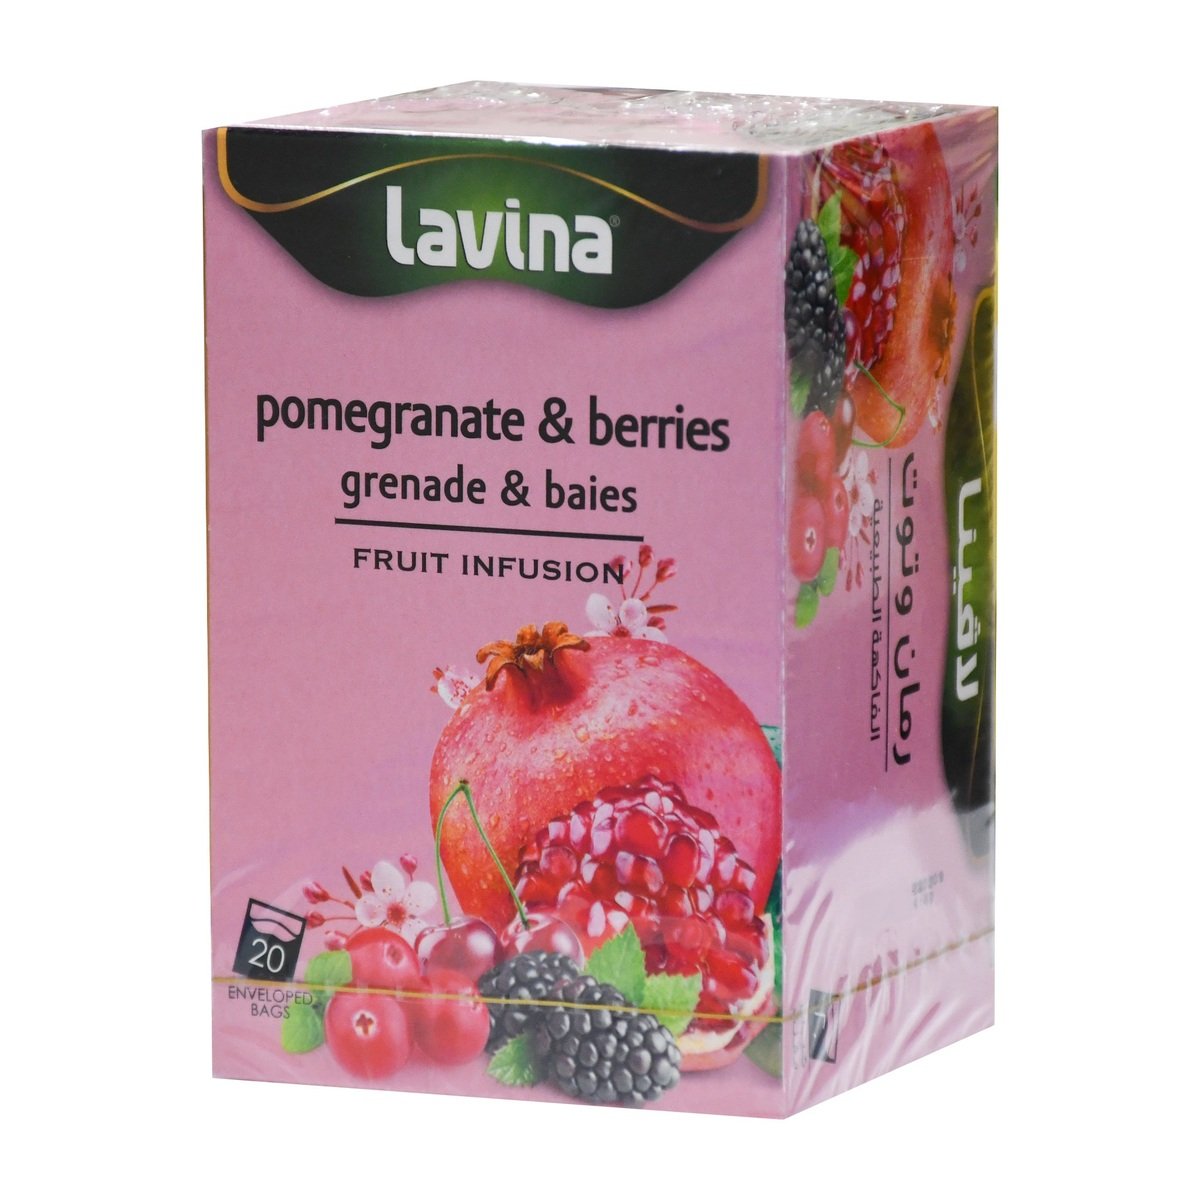 لافينا شاي اعشاب طبيعية بنكهة فاكهة الرمان و التوت ، 20 كيس